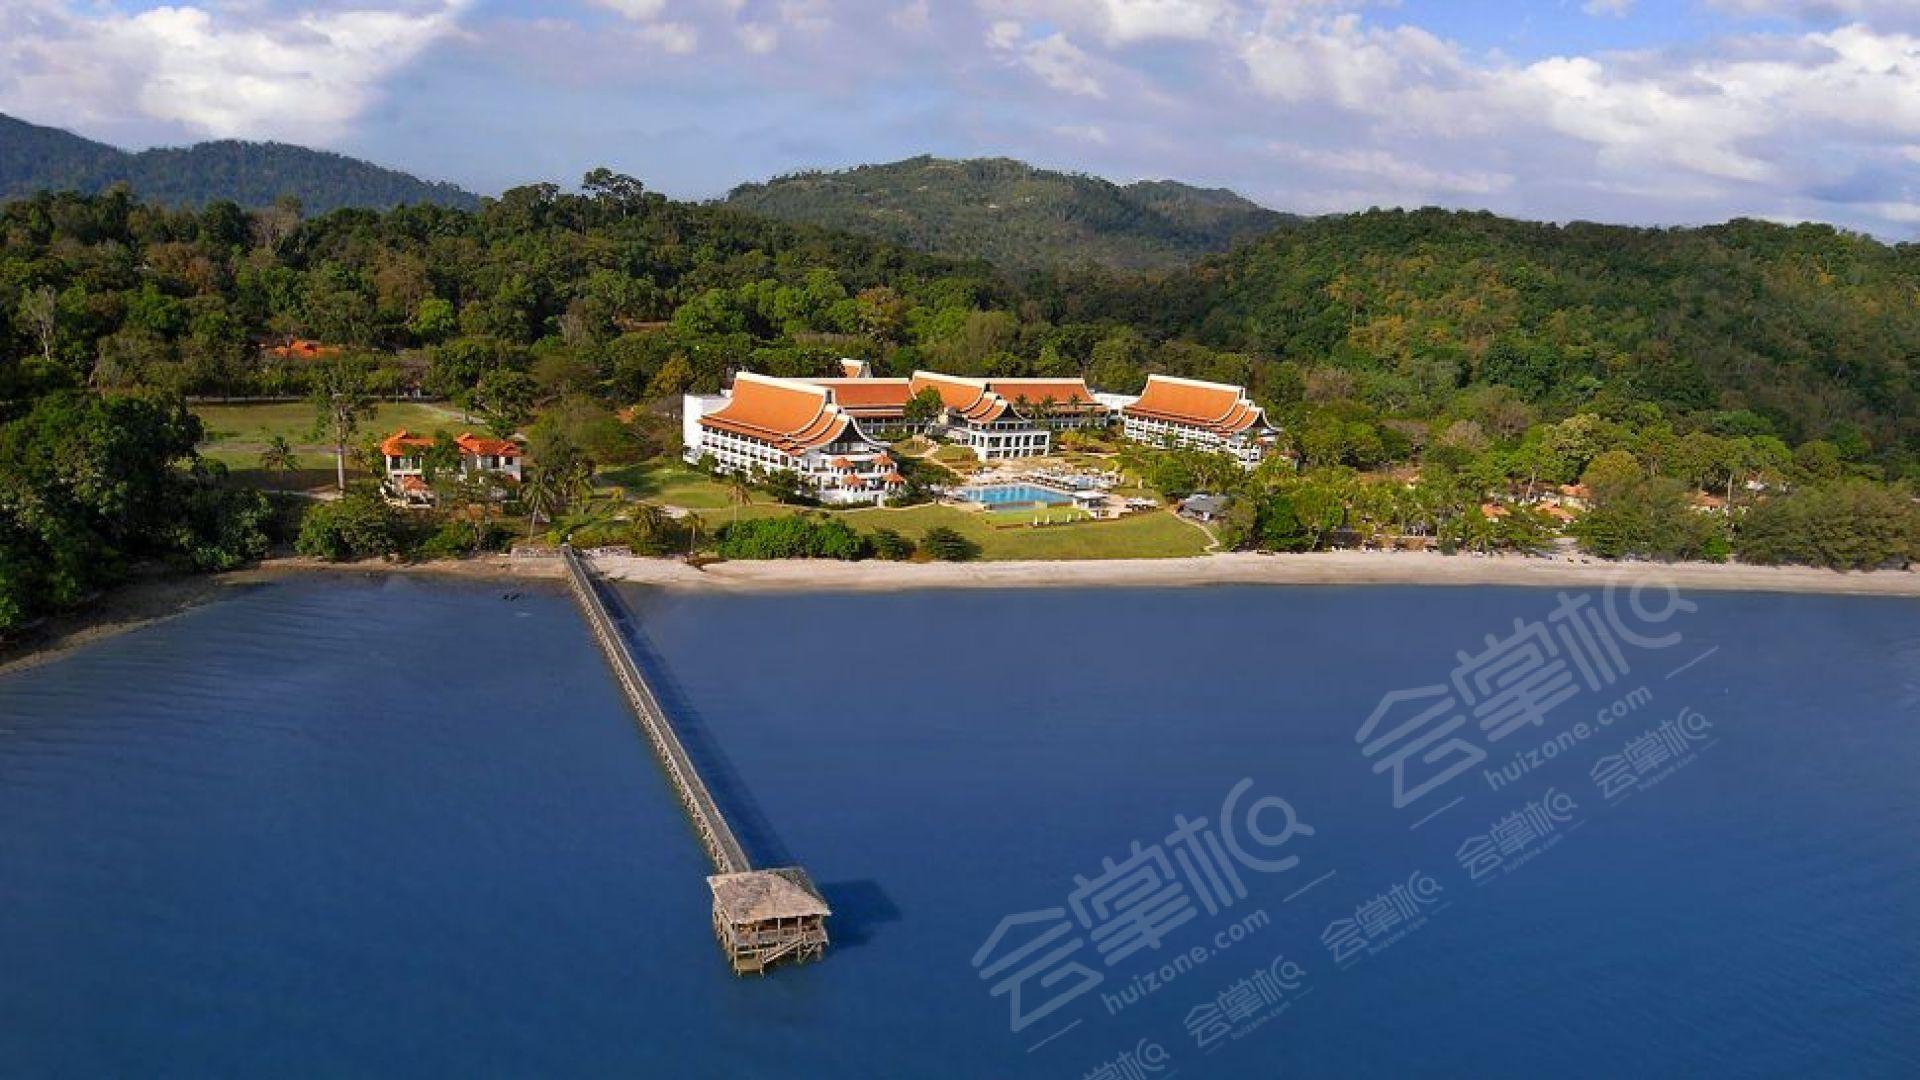 兰卡威五星级酒店最大容纳400人的会议场地|兰卡威威斯汀水疗度假村(The Westin Langkawi Resort & Spa)的价格与联系方式